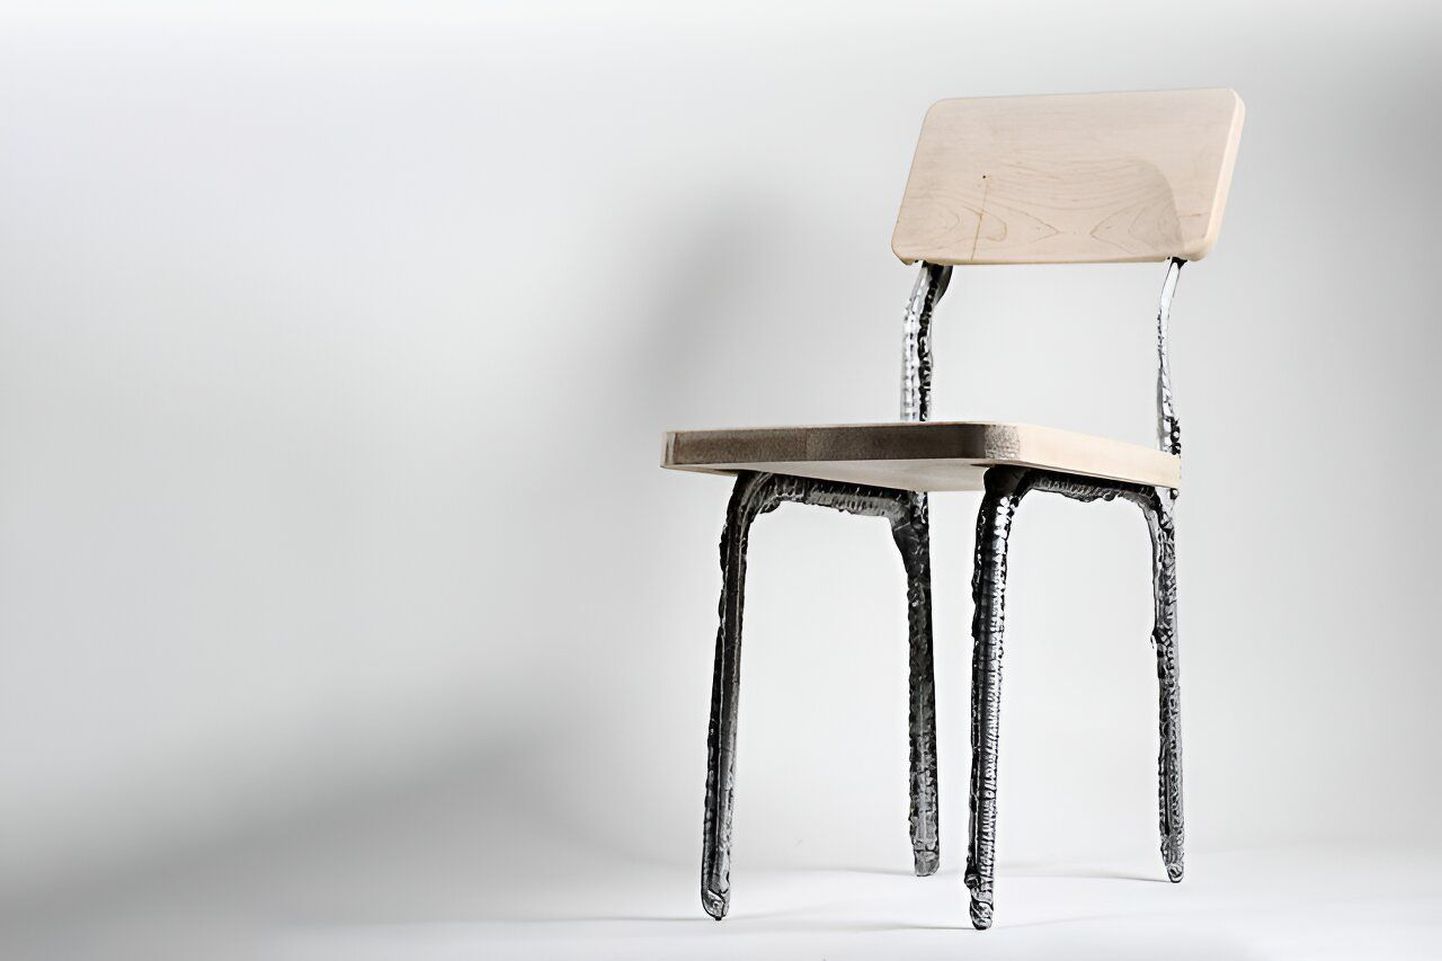 Sellise alumiiniumraamiga tooli saab uue metalliprinteriga valmis juba mõne minutiga. See tähendab tööstusrevolutsiooni 3D-printimises.